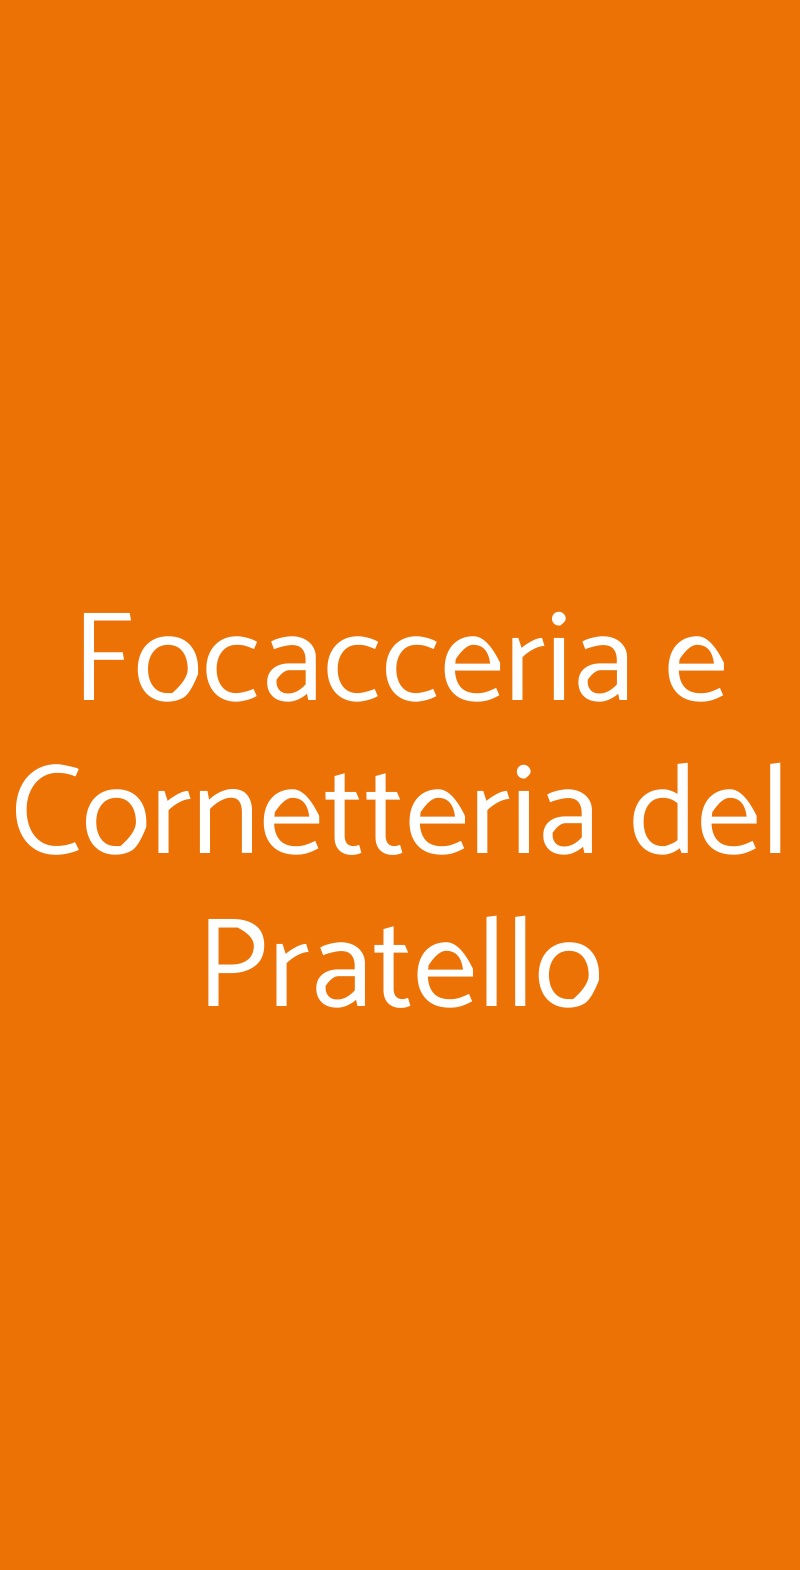 Focacceria e Cornetteria del Pratello Bologna menù 1 pagina